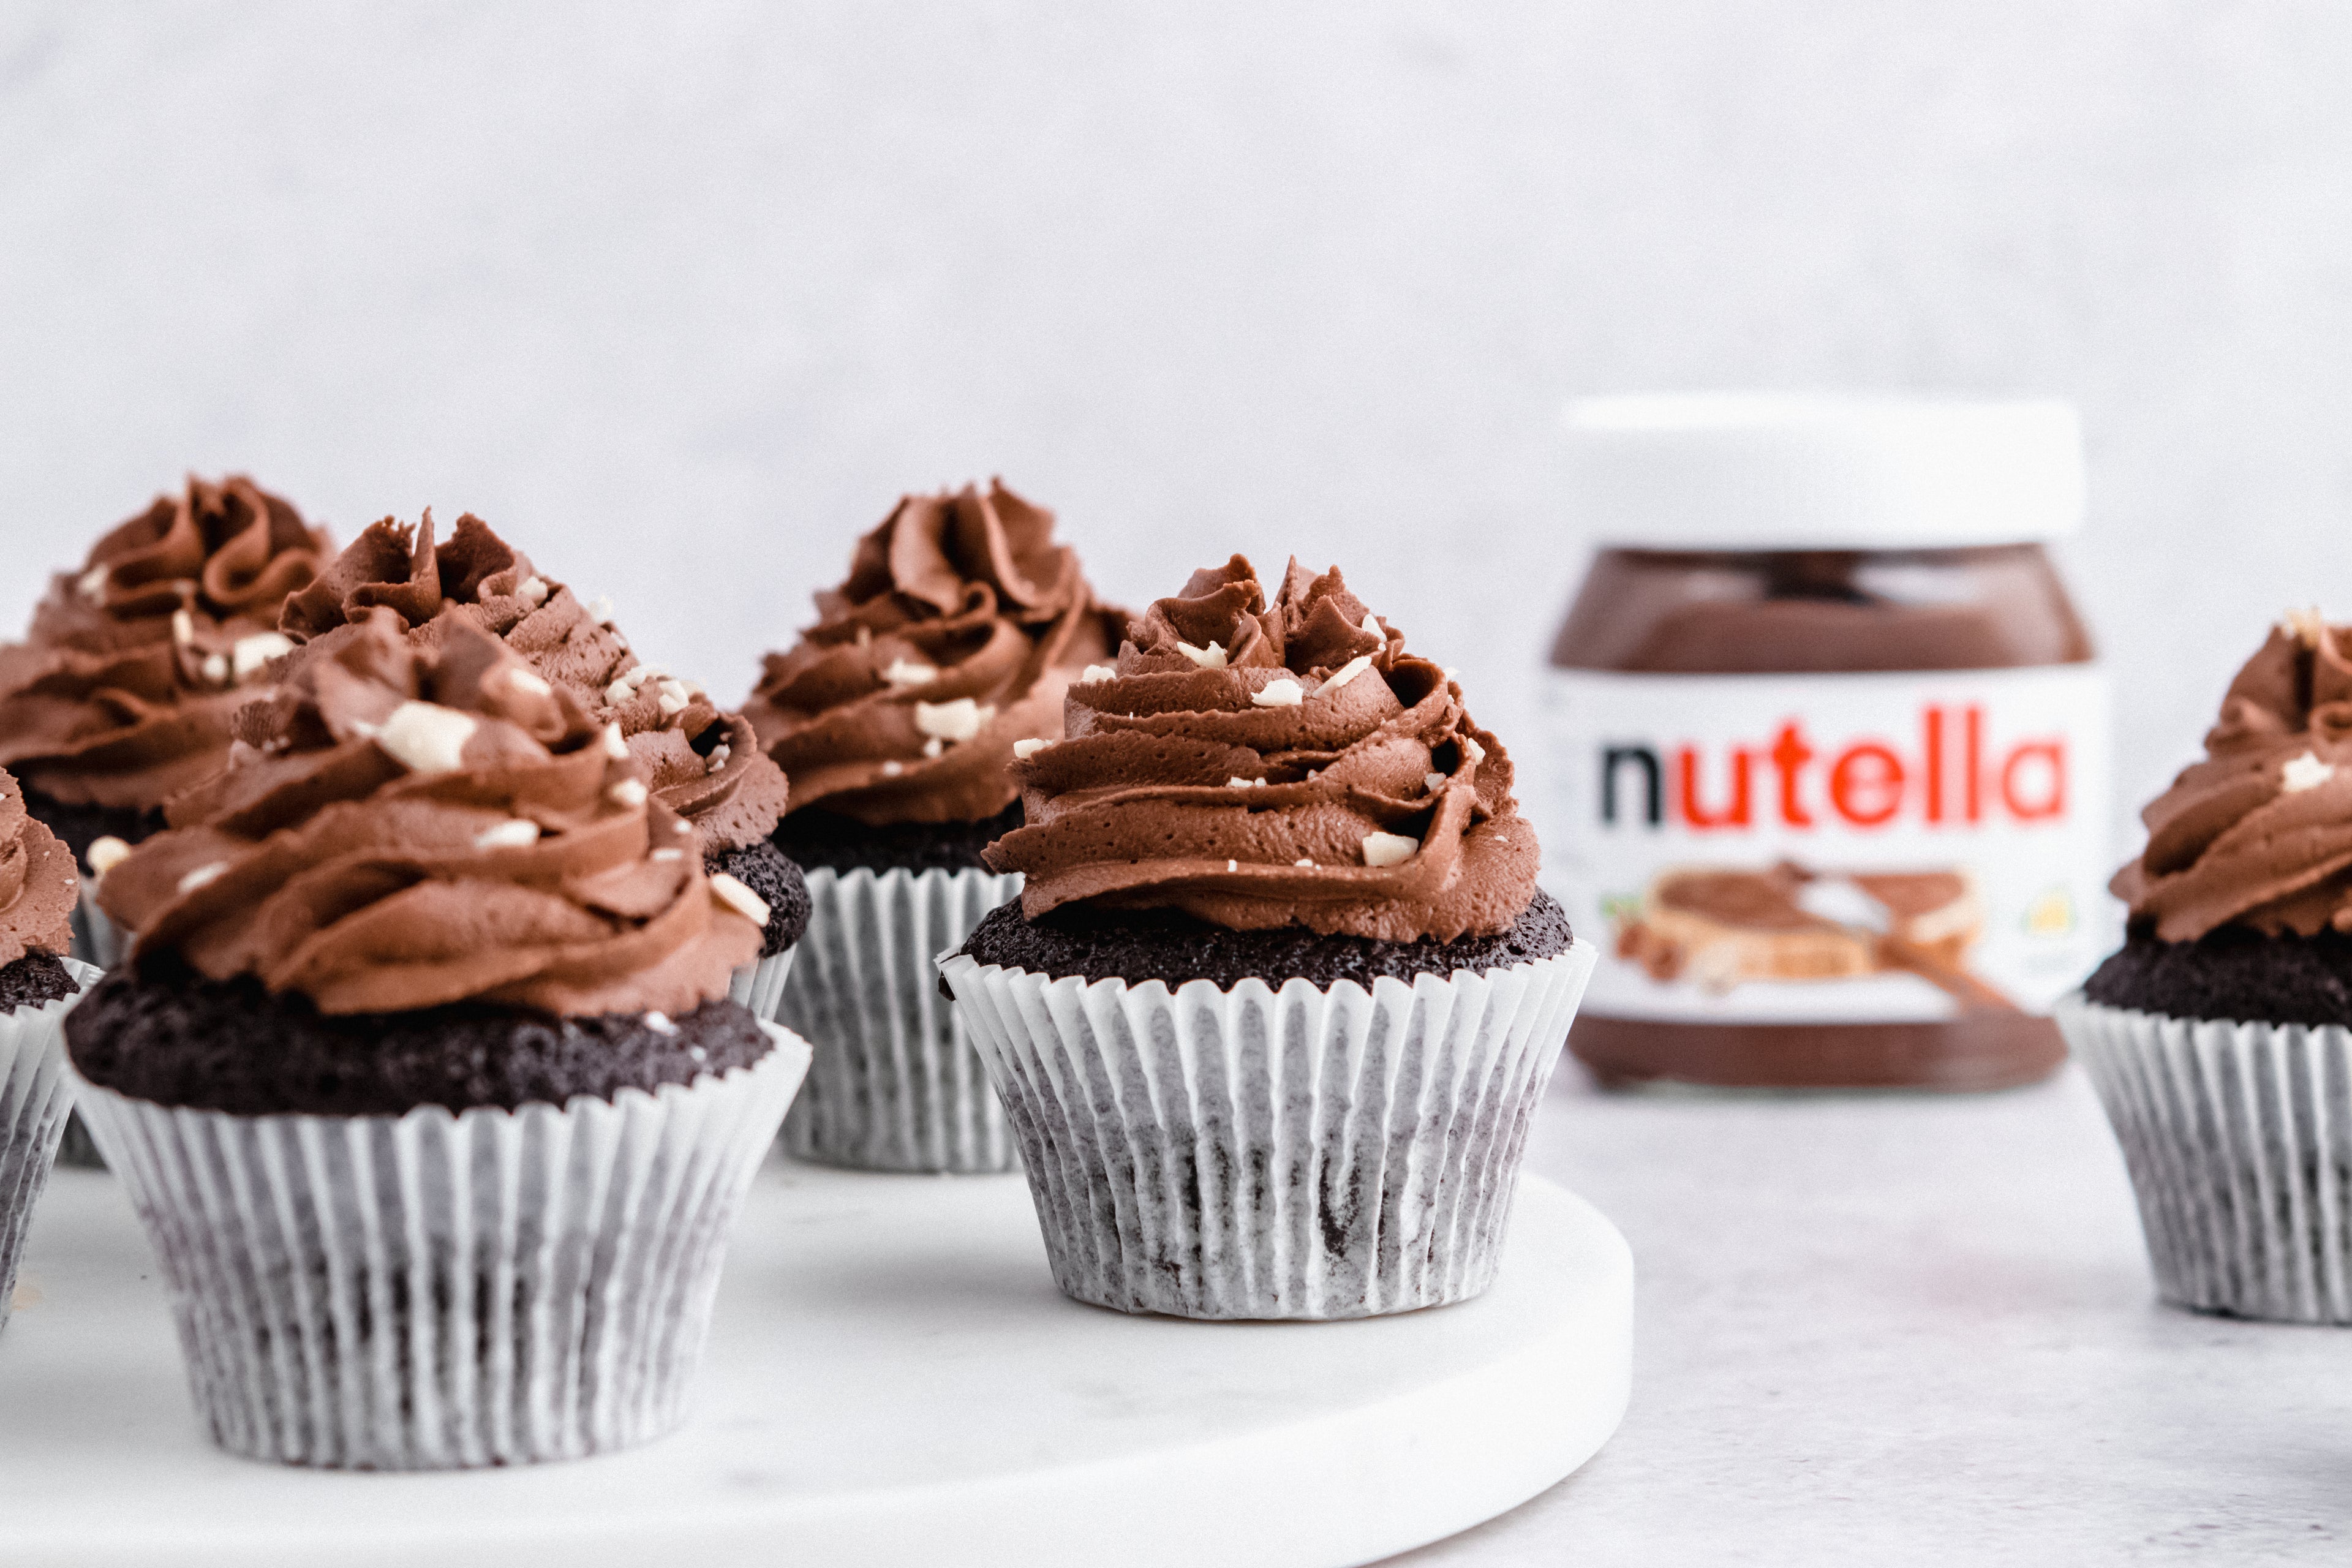 nutella cupcakes 3 ingredients